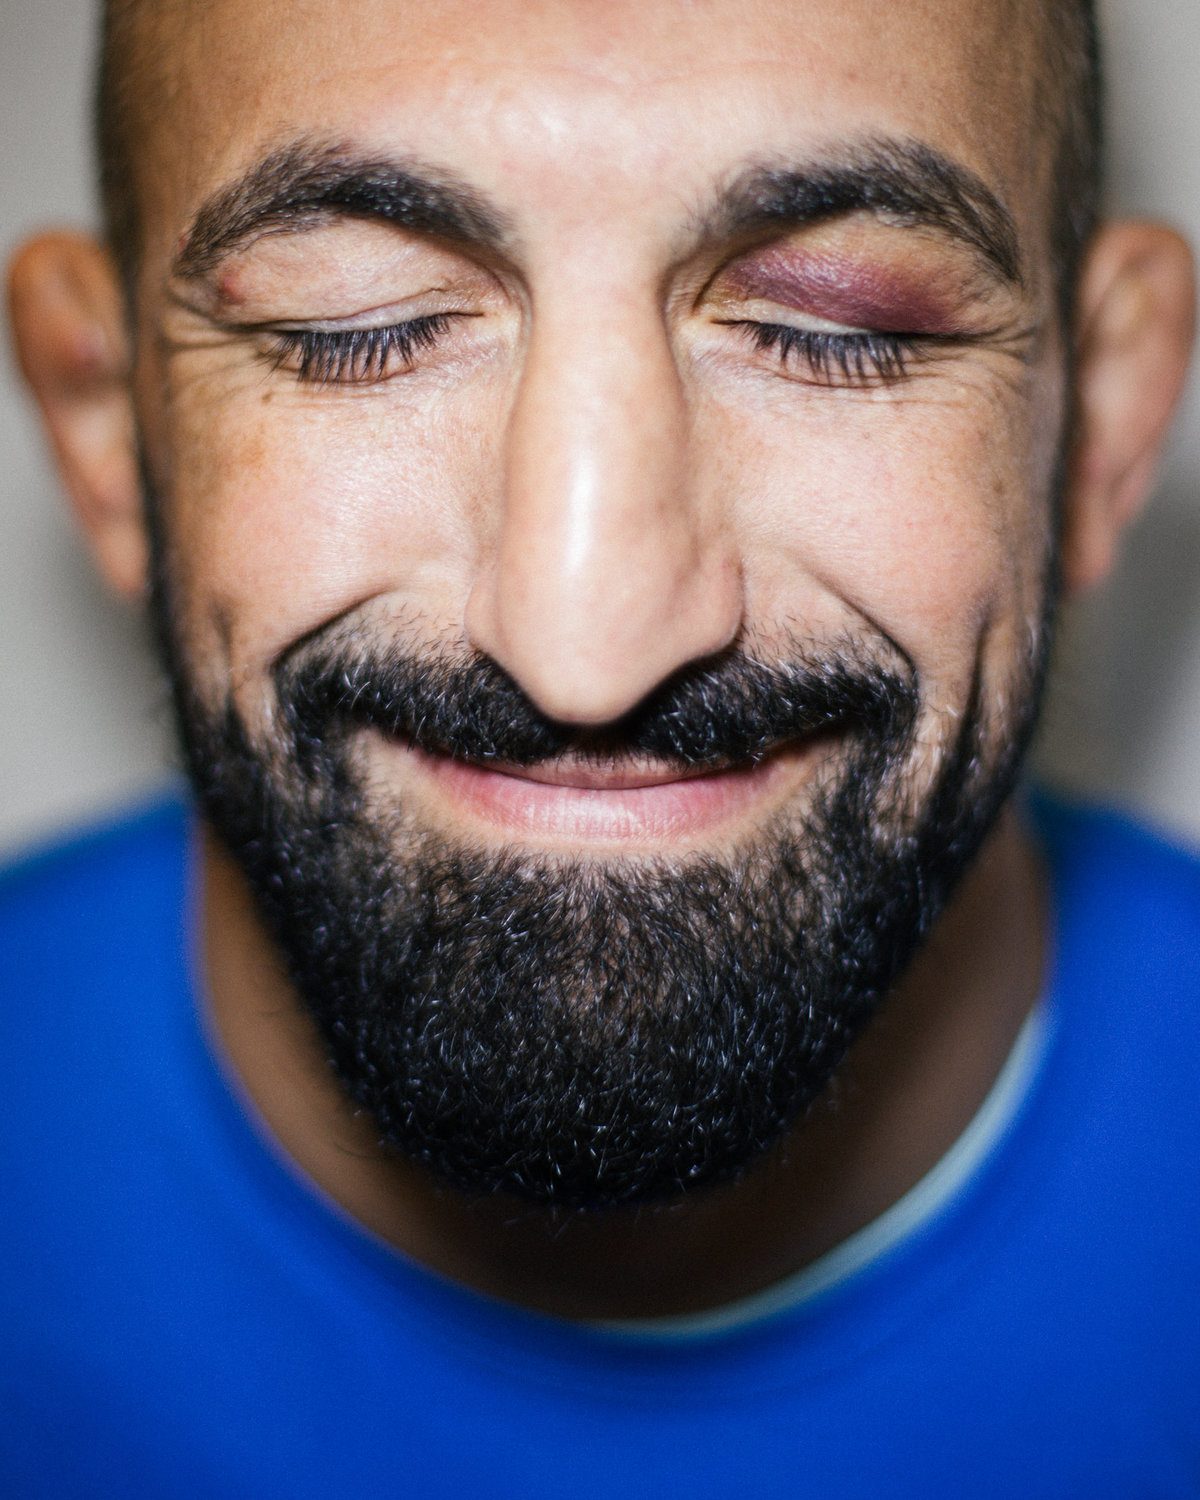 Reza Madadi, en av Sveriges mest kända fighters inom sporten Mixed Martial Arts (MMA), poserar på bild med sin blåtira. Fotot togs under en reportagefotografering för Fighter Magazine.